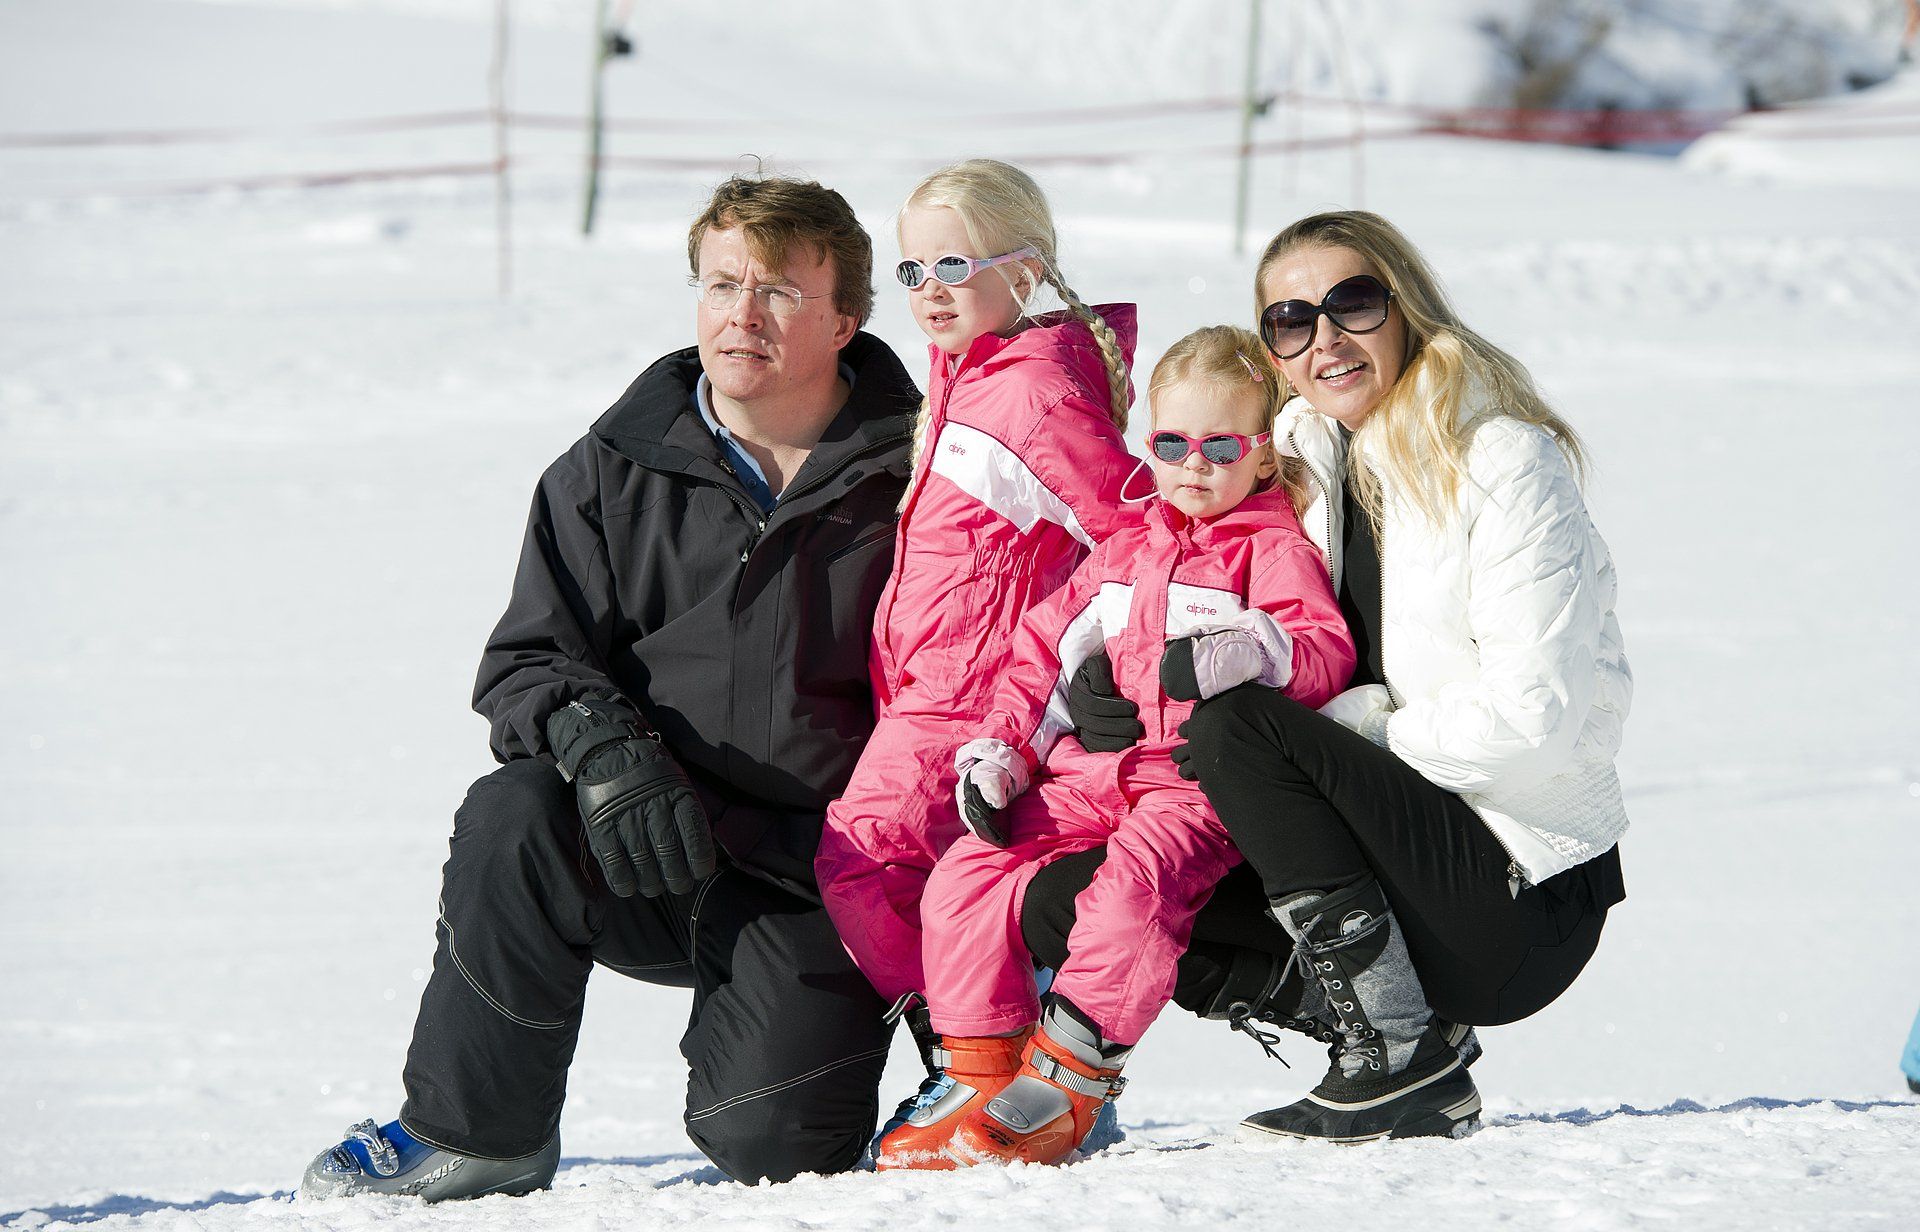 Lech 2011: prins Friso met zijn vrouw Mabel en dochters Luana en Zaria. Deze foto wordt een jaar voor het ongeluk gemaakt tijdens de wintersportvakantie.